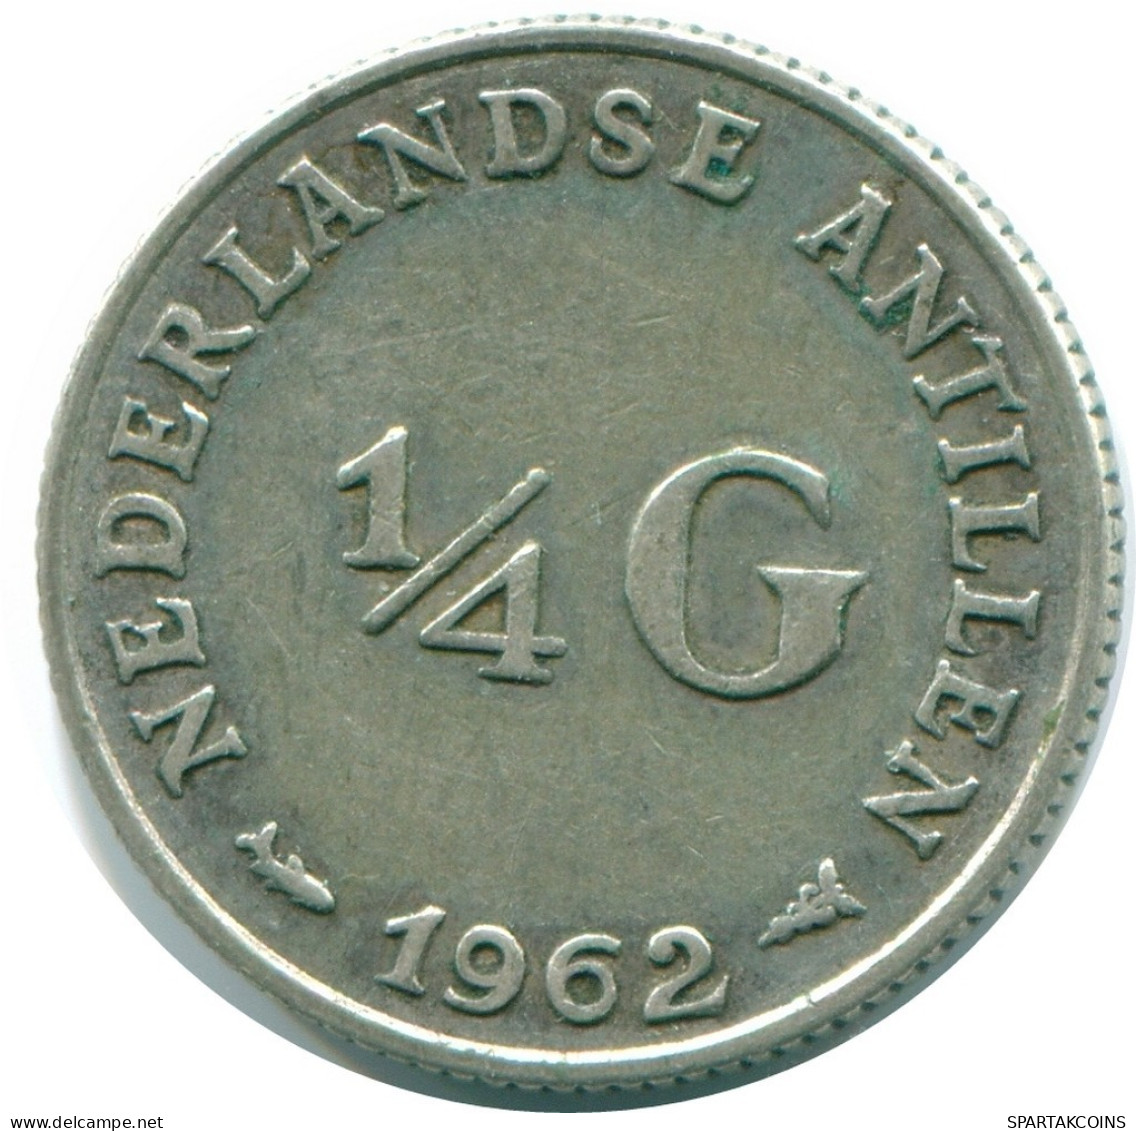 1/4 GULDEN 1962 NIEDERLÄNDISCHE ANTILLEN SILBER Koloniale Münze #NL11135.4.D.A - Nederlandse Antillen